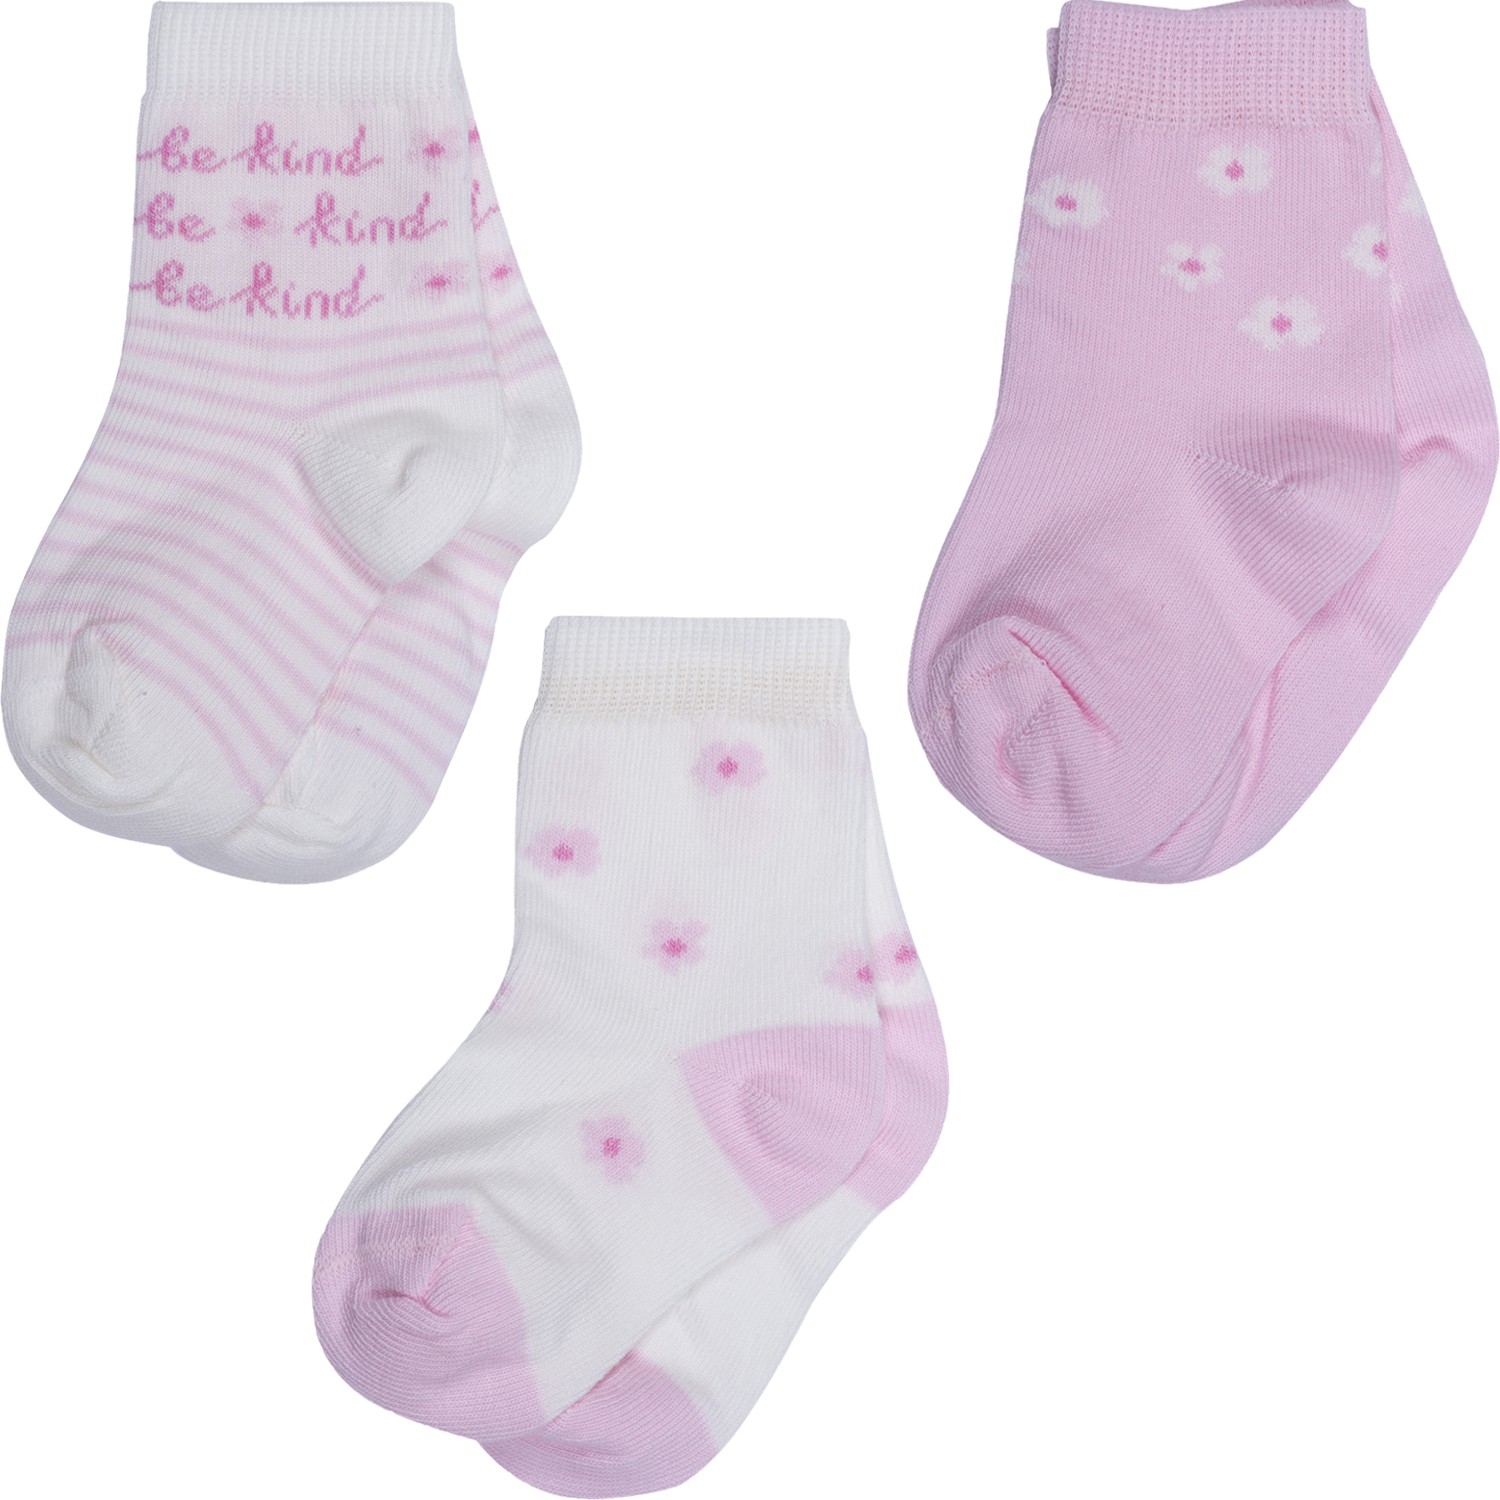 Носки для девочек Rusocks 3-Д3-13793 цв. бежевый; розовый р. 8-10